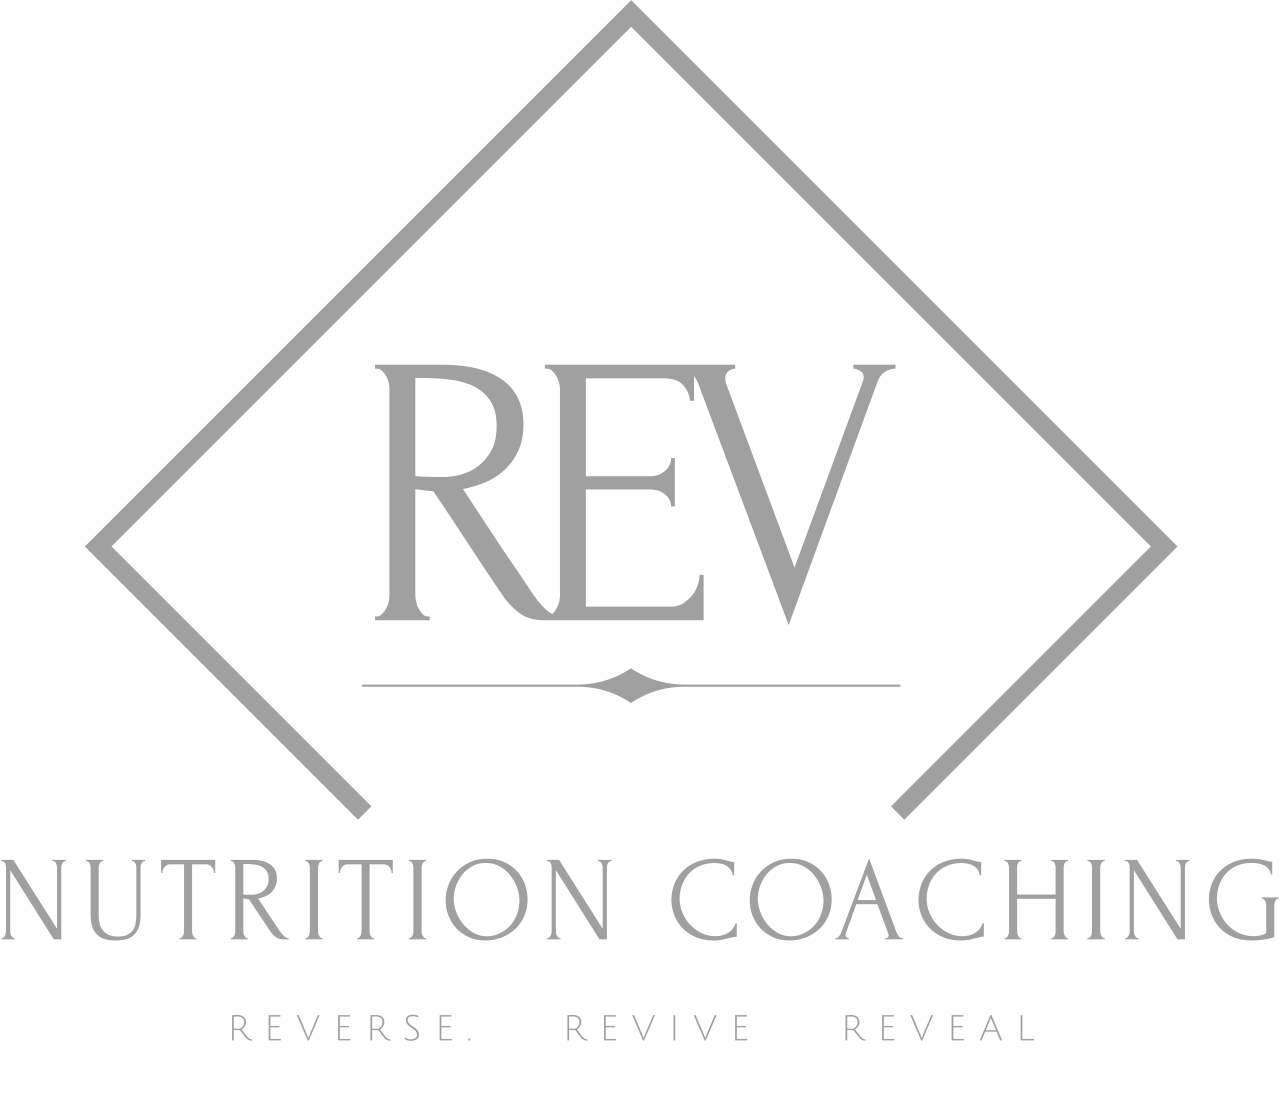 Rev Nutrition Coaching's logo